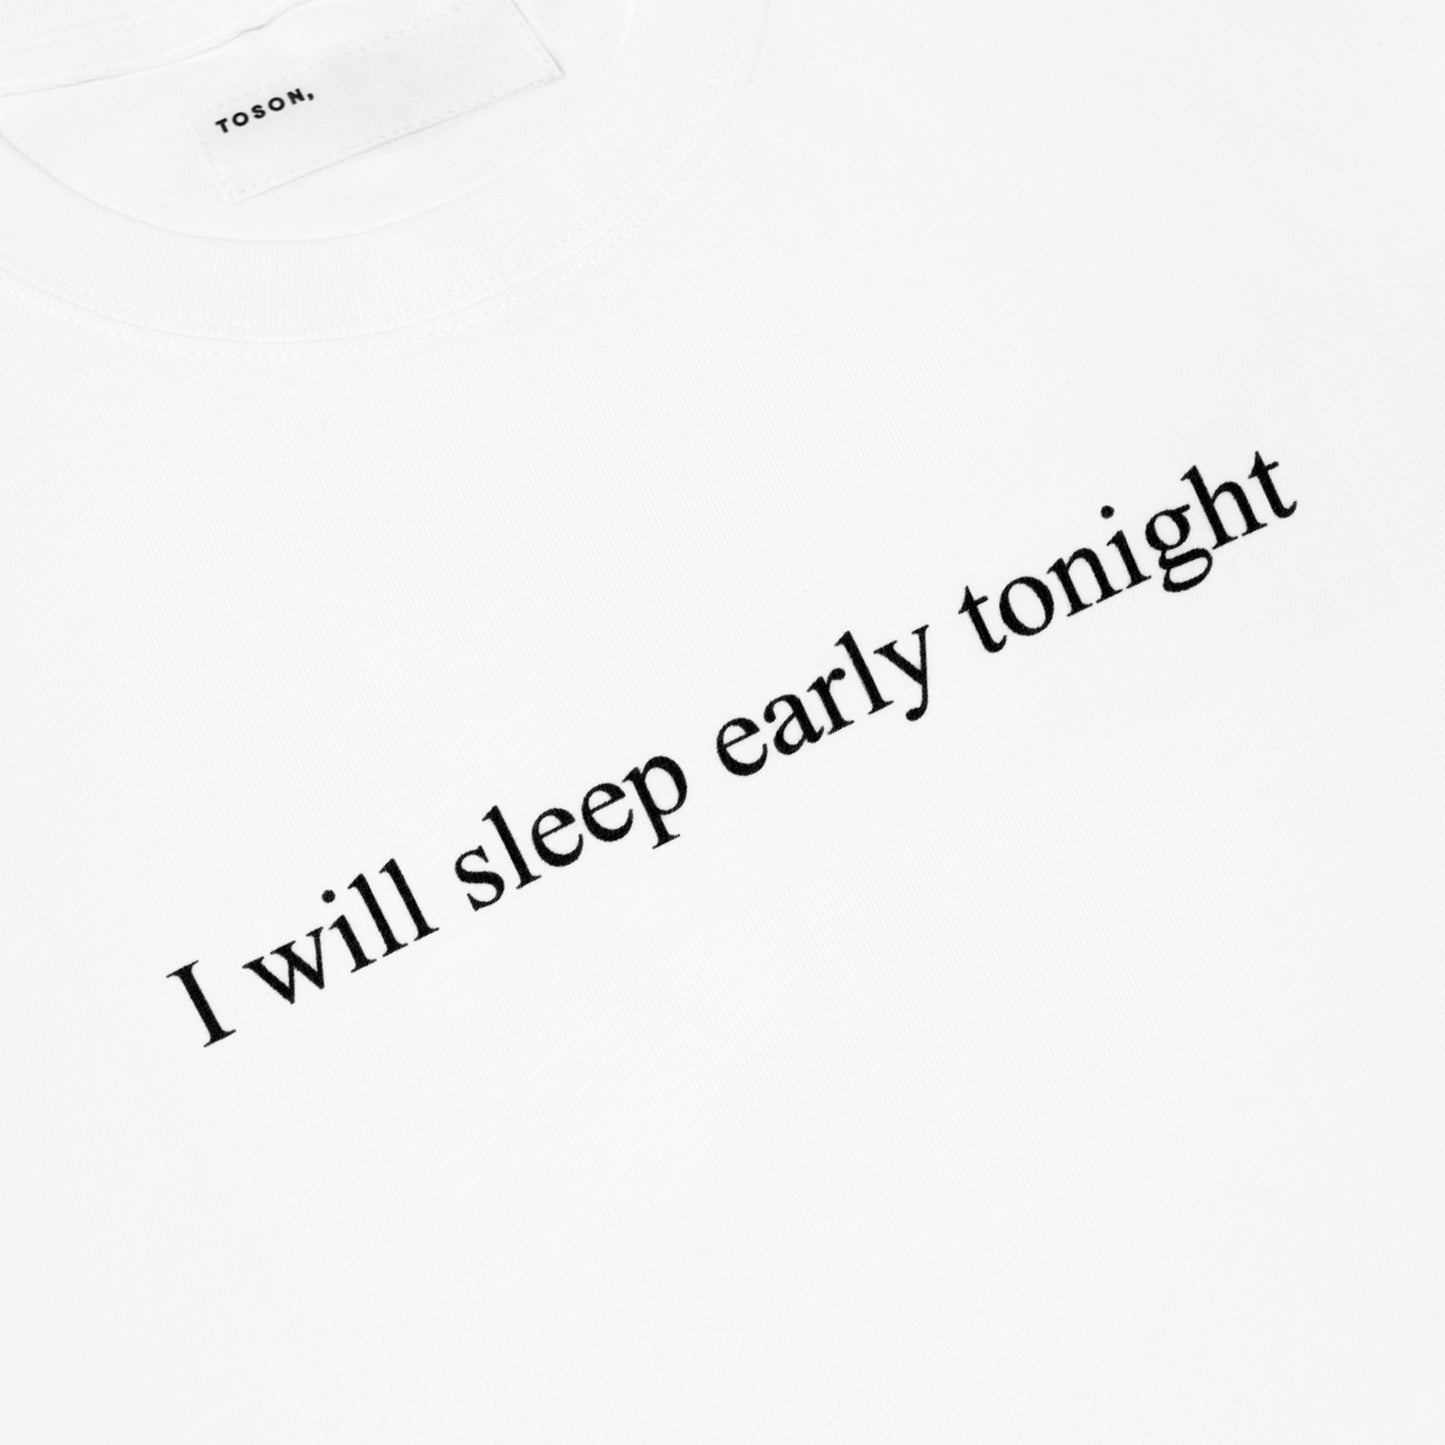 "I will sleep early tonight" Print T-shirt